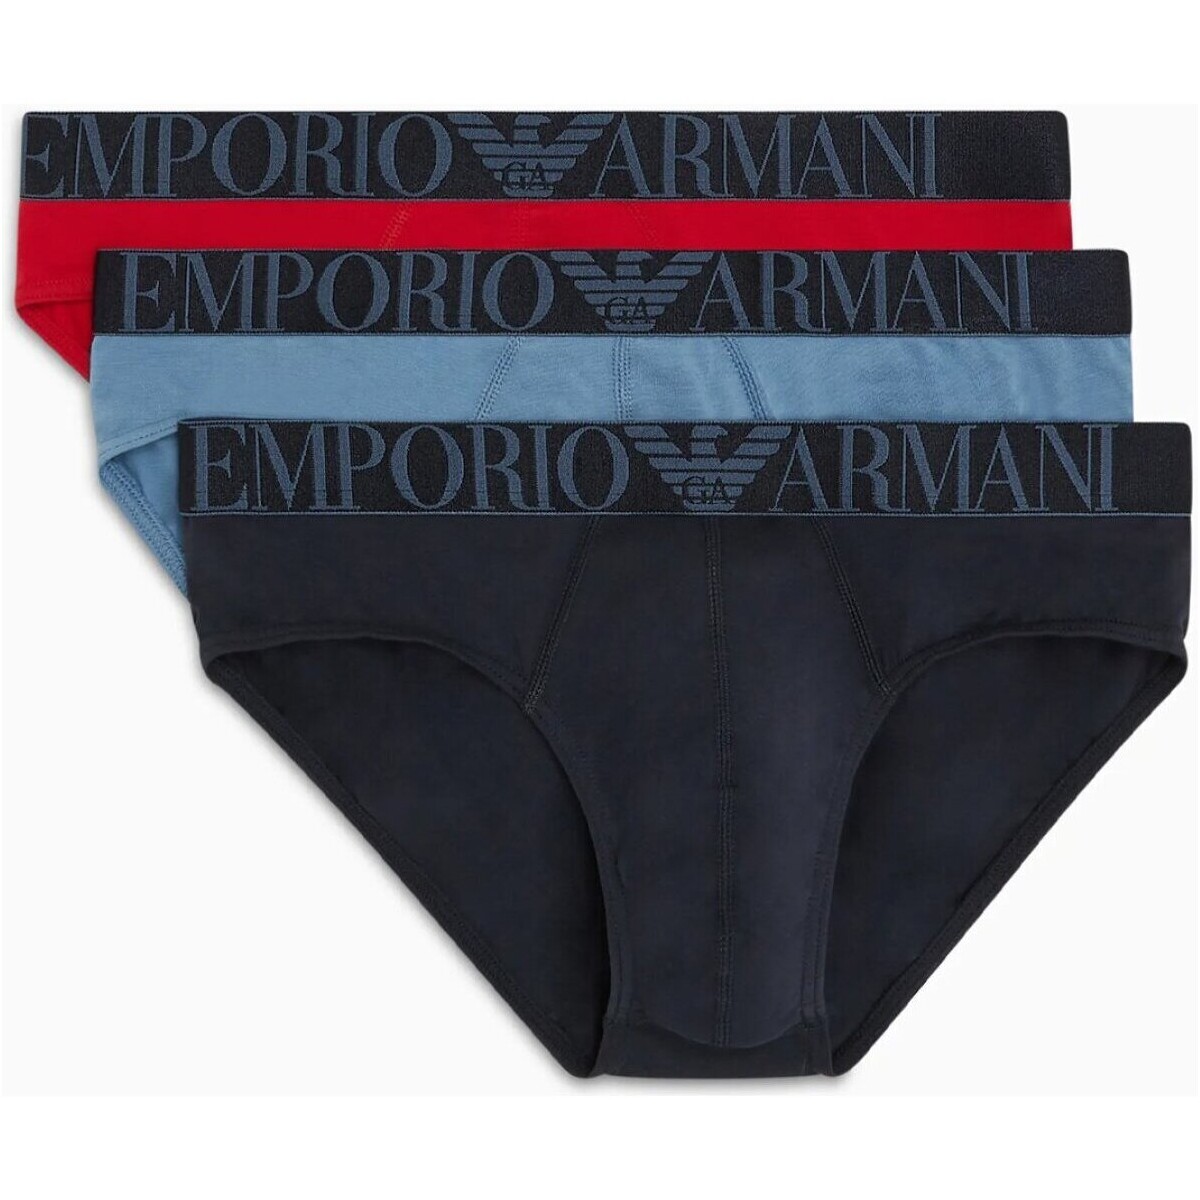 Fehérnemű Férfi Boxerek Emporio Armani 111734 4R726 Kék